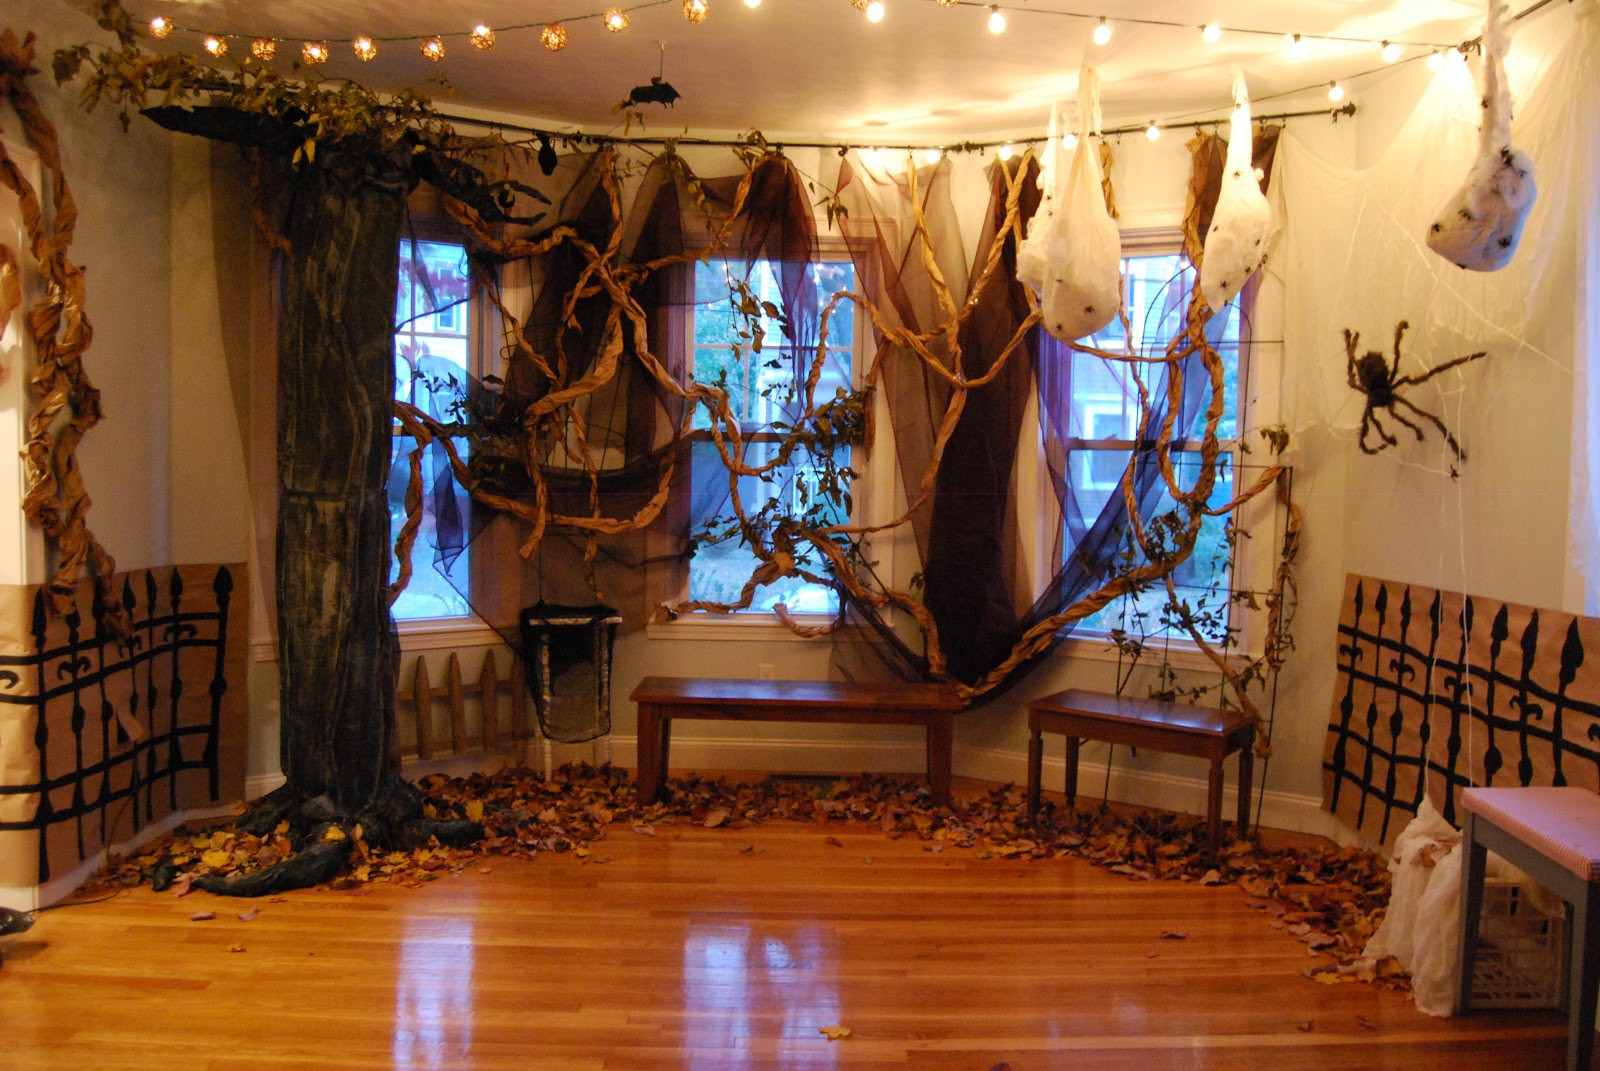 Halloween Decor Indoor
 Scary Indoor Outdoor Halloween Decorations Ideas 2016 best